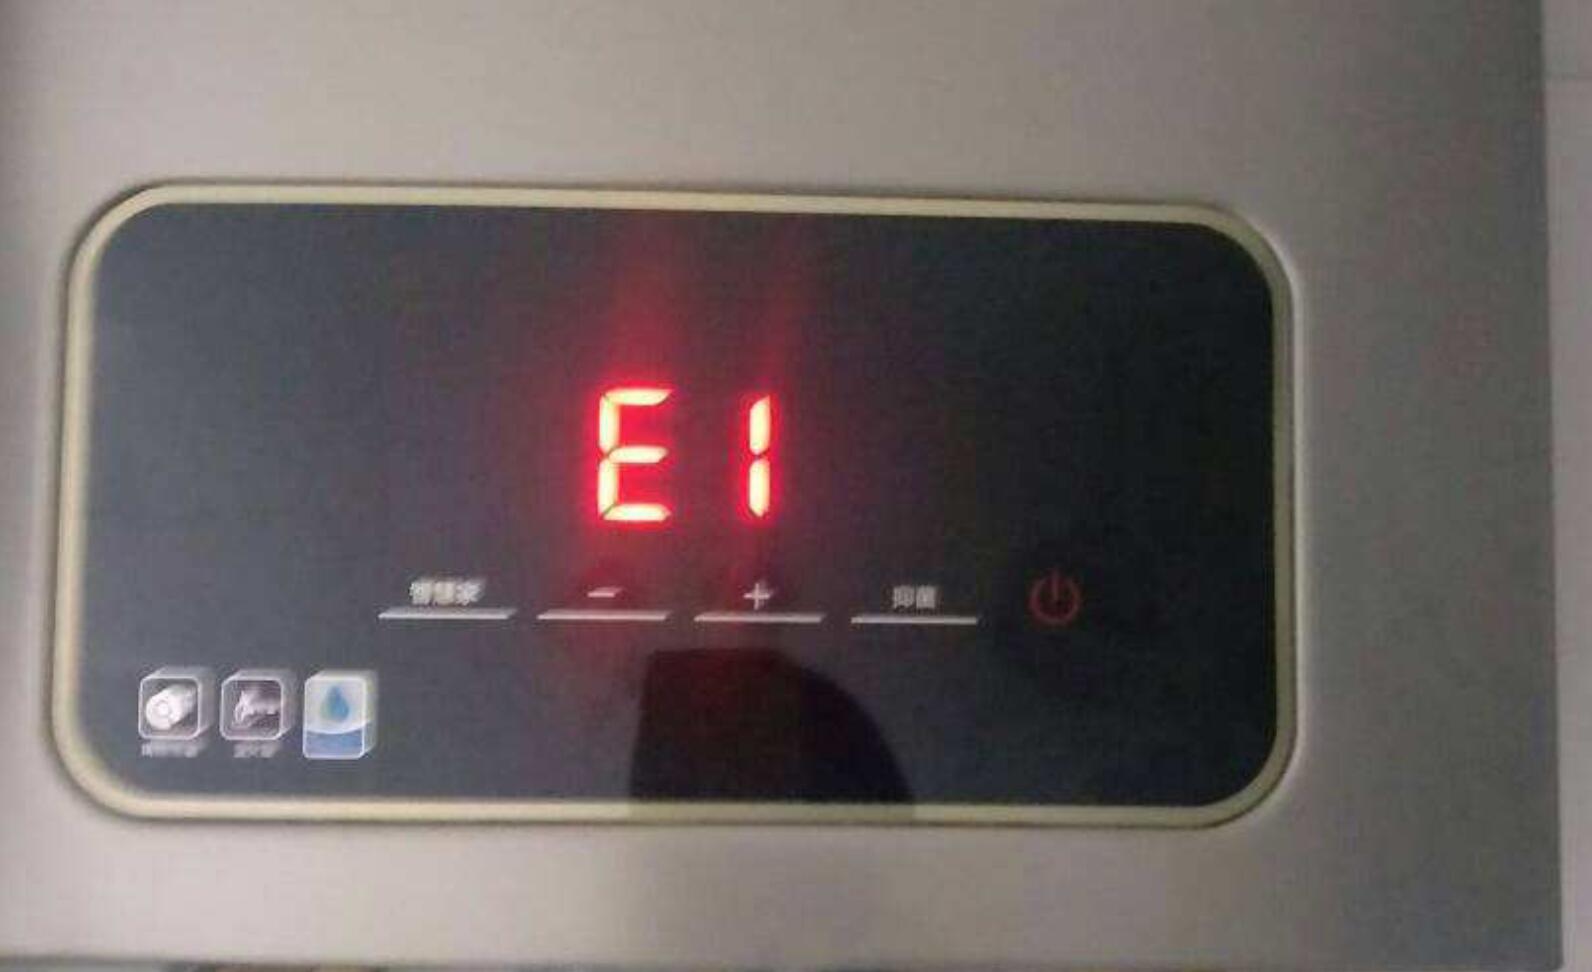 热水器显示e1是什么意思